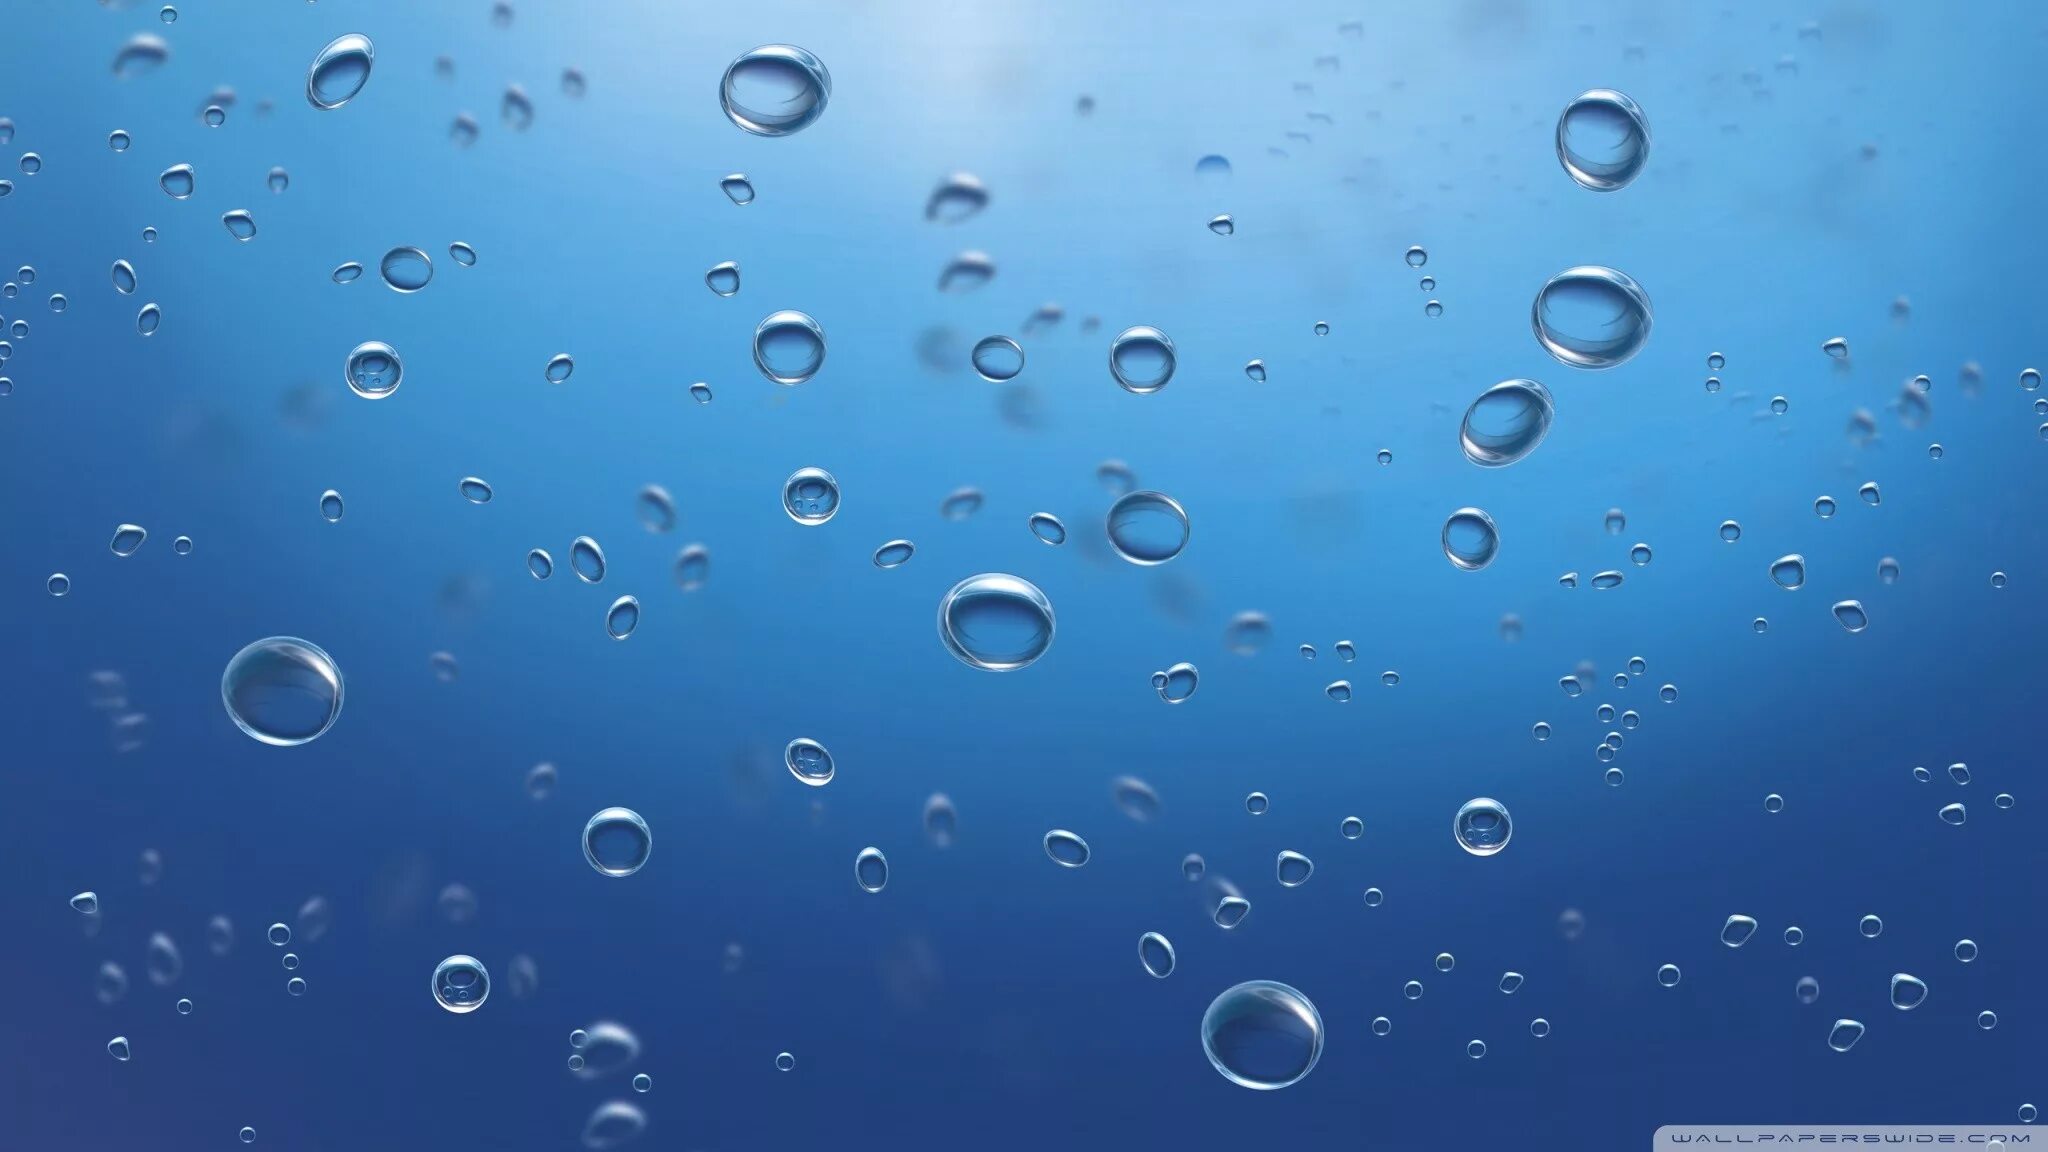 Пузырьки в воде. Вода фон. Пузыри под водой. Фон пузыри. Мельчайшие капли воды в воздухе